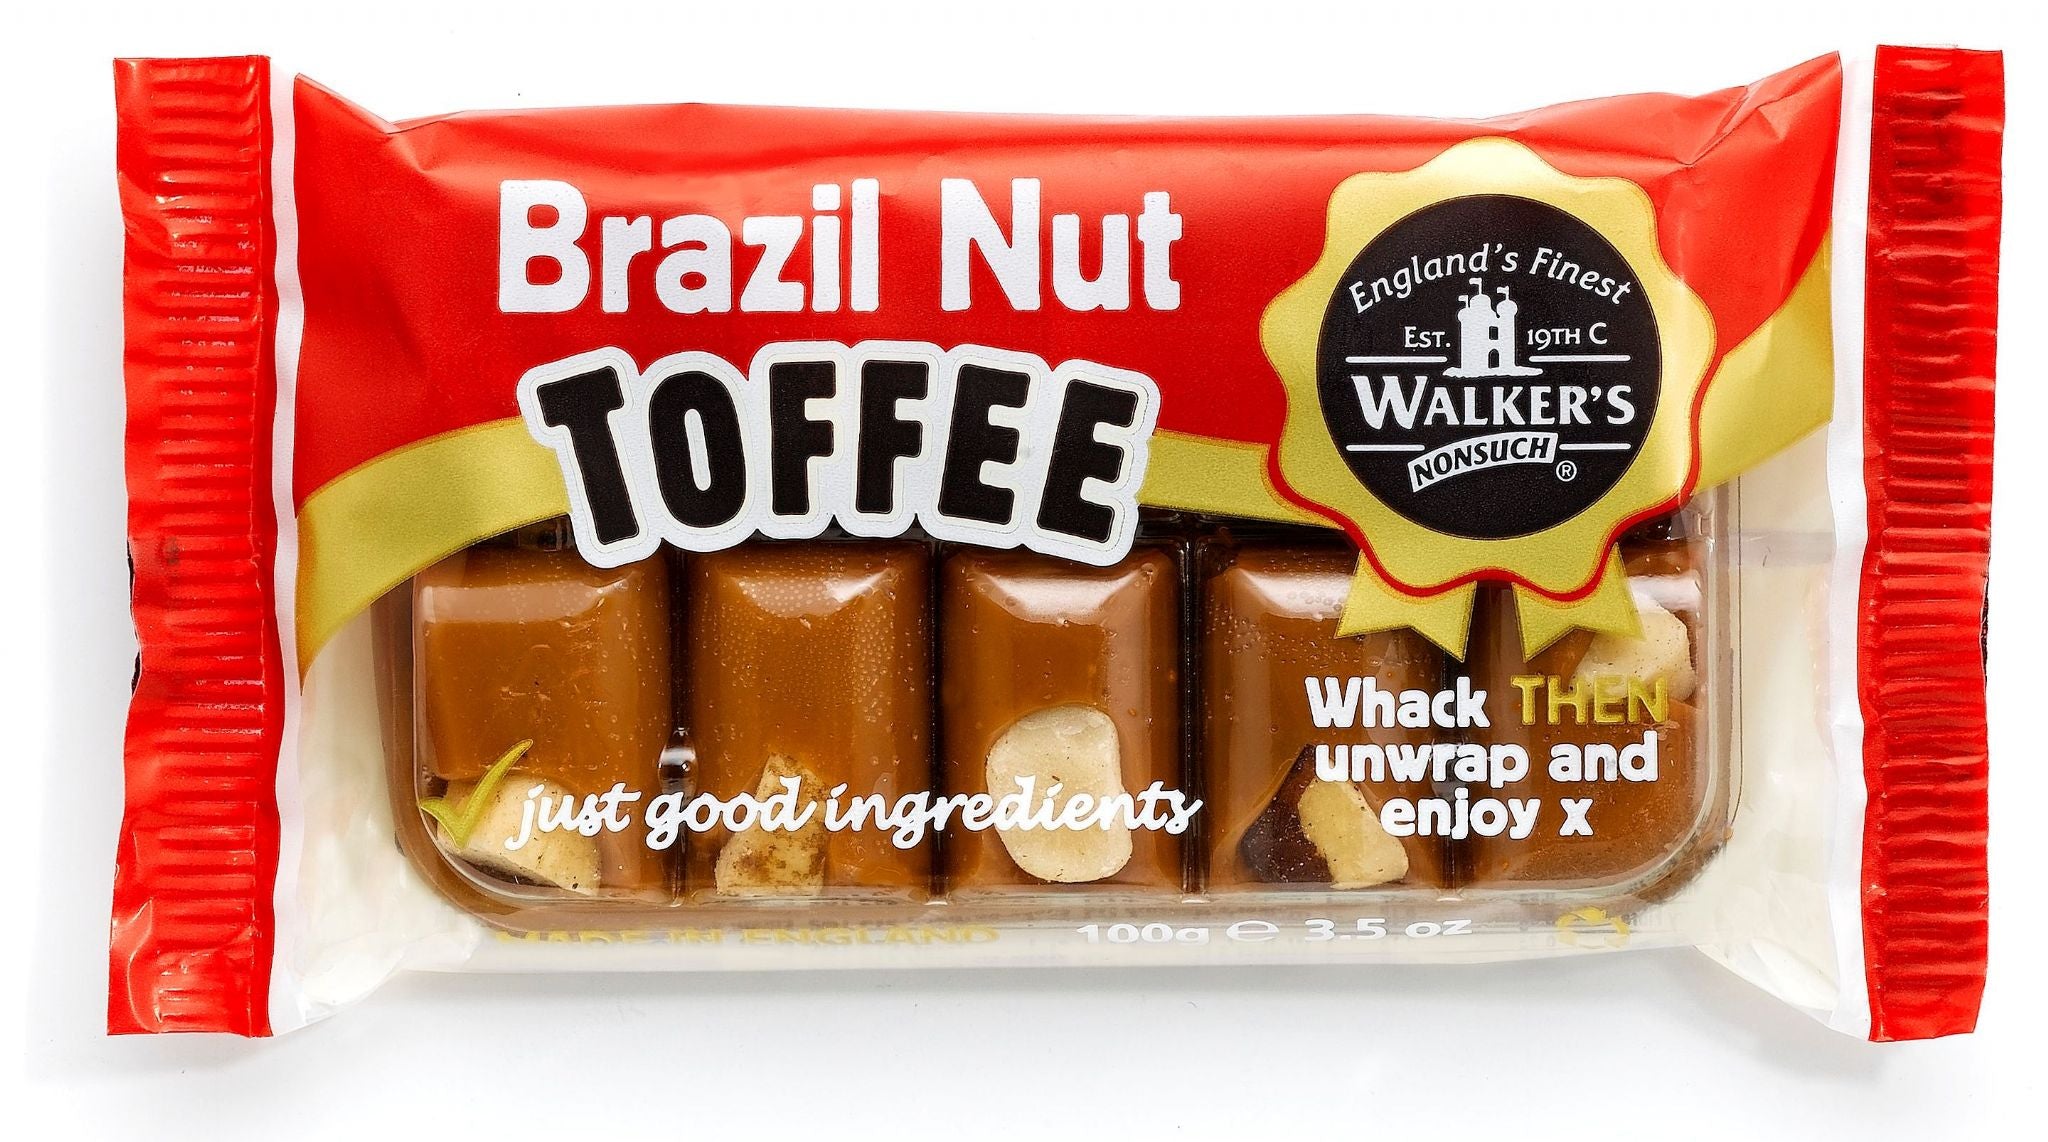 Walkers Toffee Brazil Nut